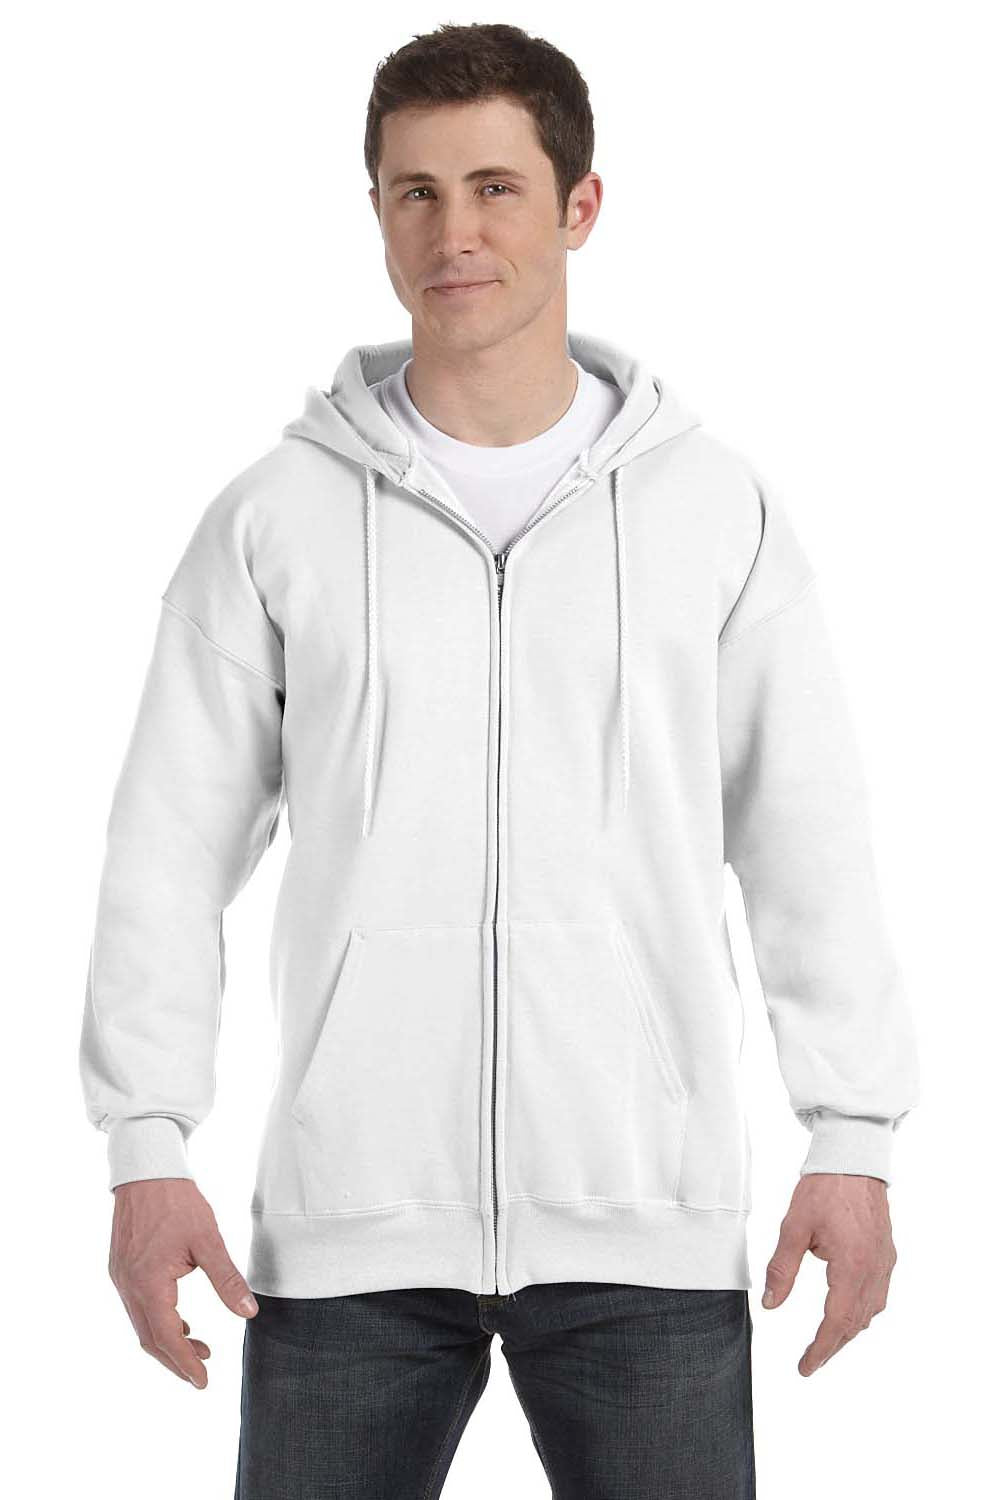 Hanes F280 Mens Ultimate Cotton PrintPro XP Full Zip Hooded Sweatshirt Hoodie White Front